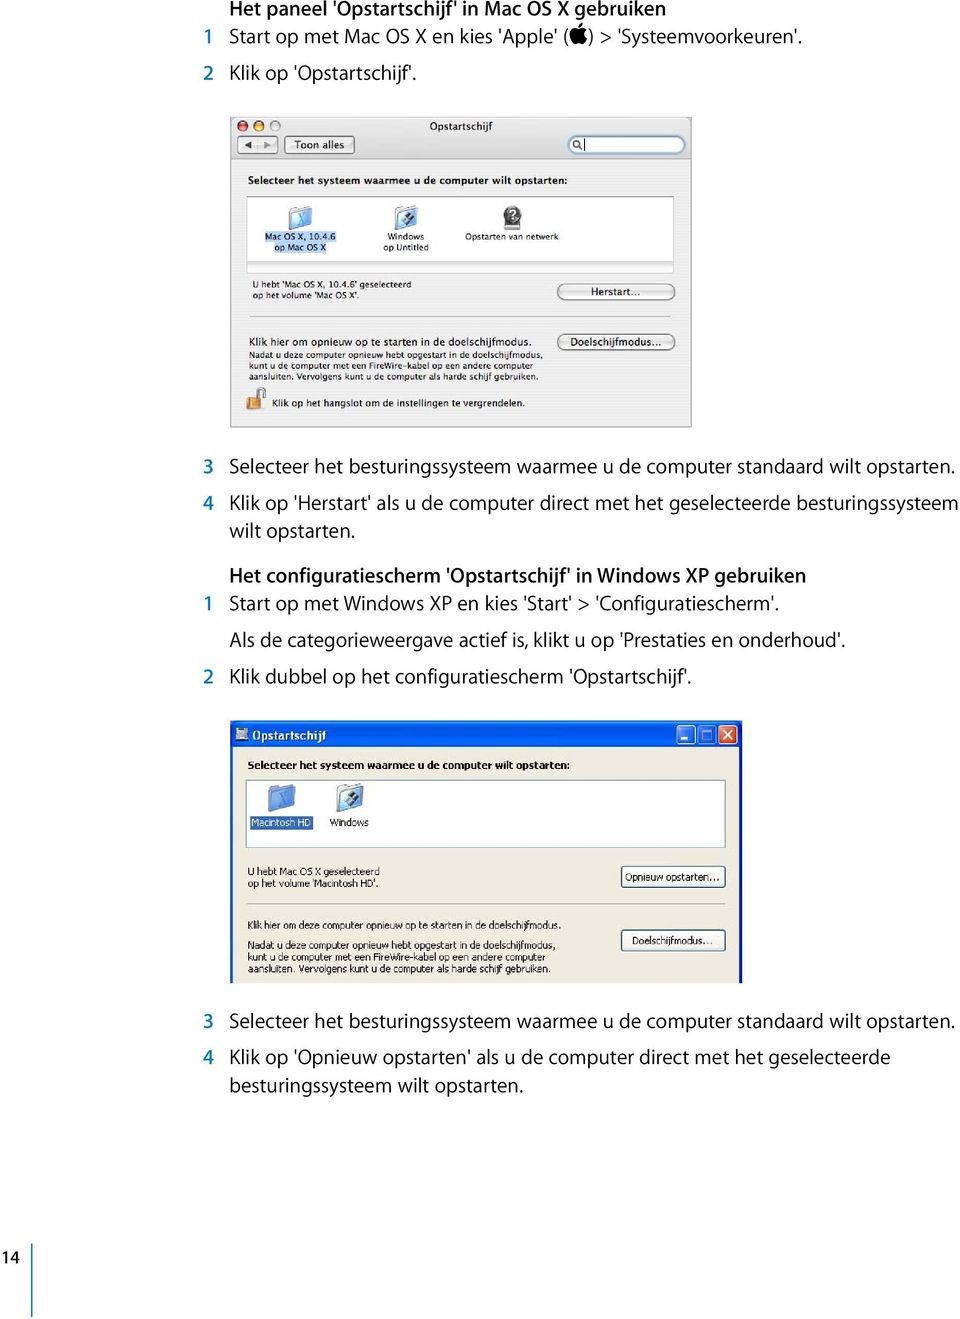 Het configuratiescherm 'Opstartschijf' in Windows XP gebruiken 1 Start op met Windows XP en kies 'Start' > 'Configuratiescherm'.